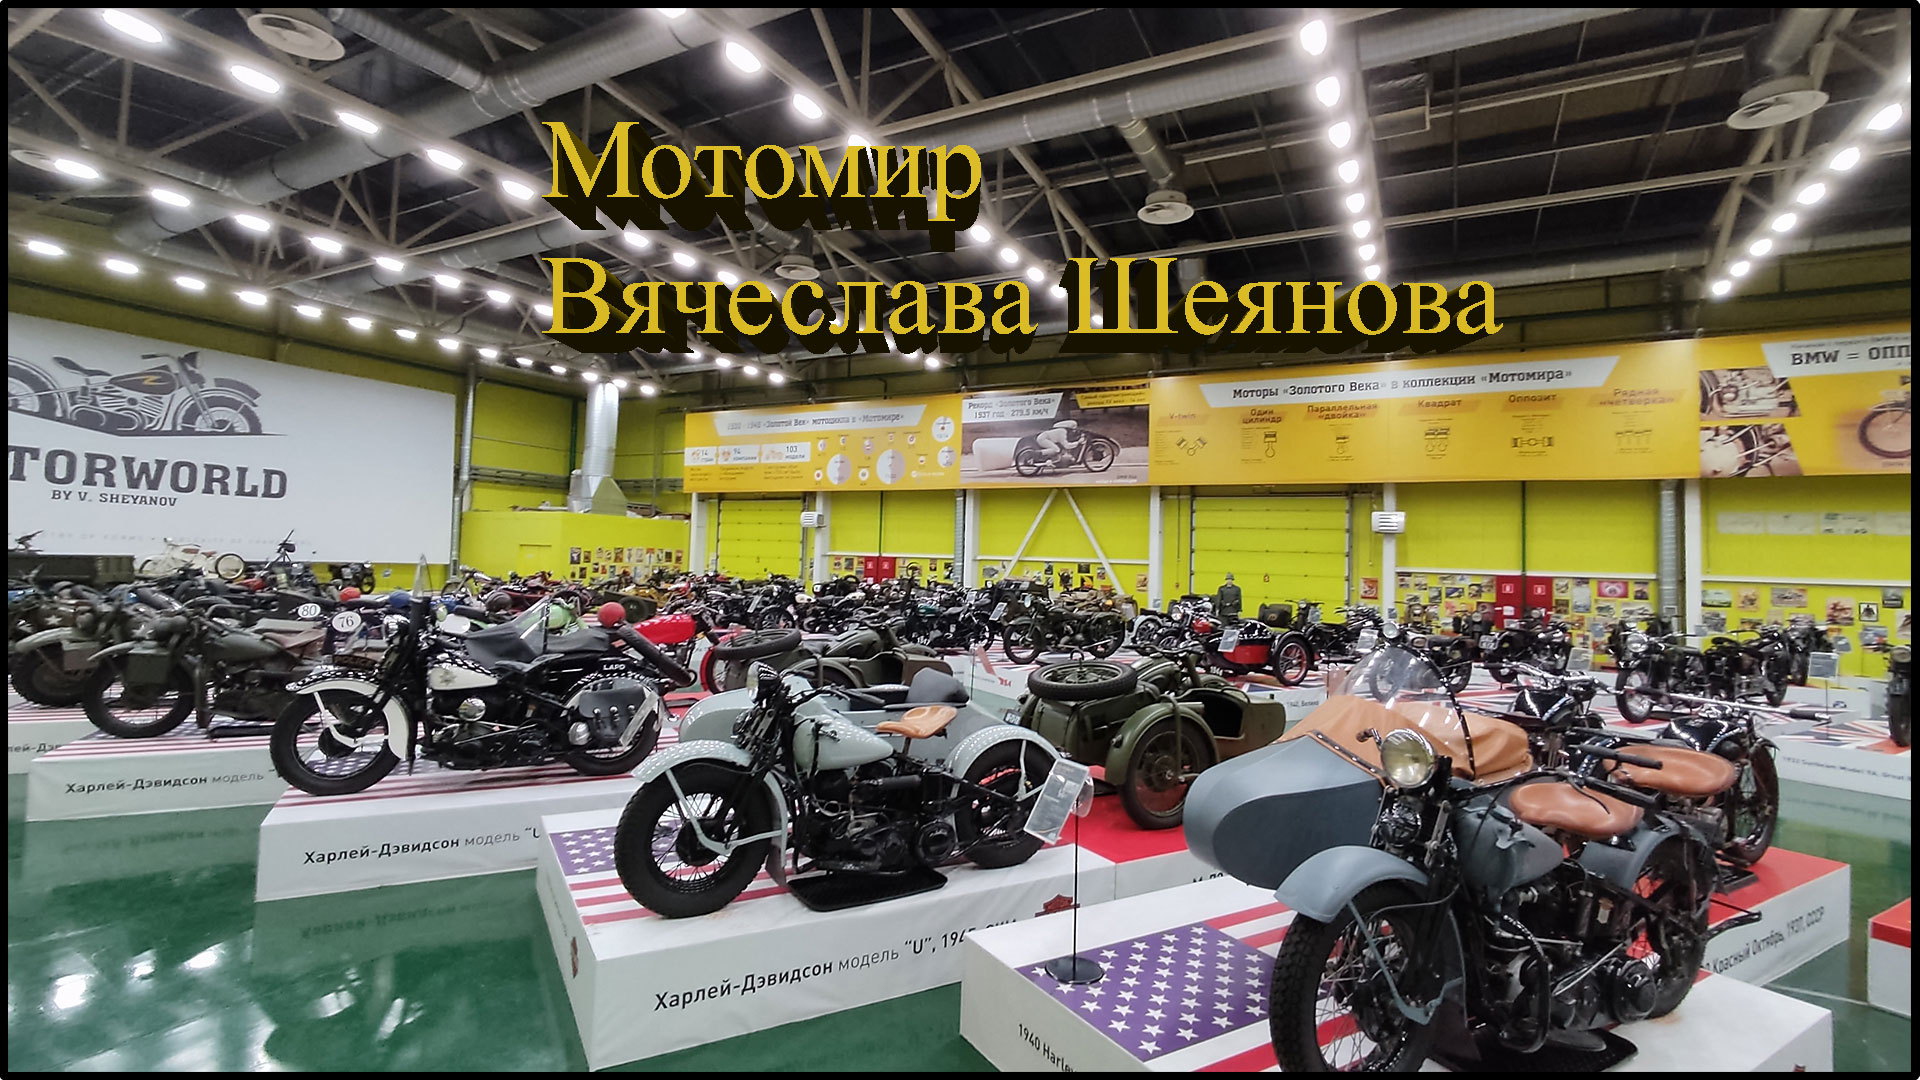 Музей мотоциклов в Самаре (Мотомир Вячеслава Шеянова).